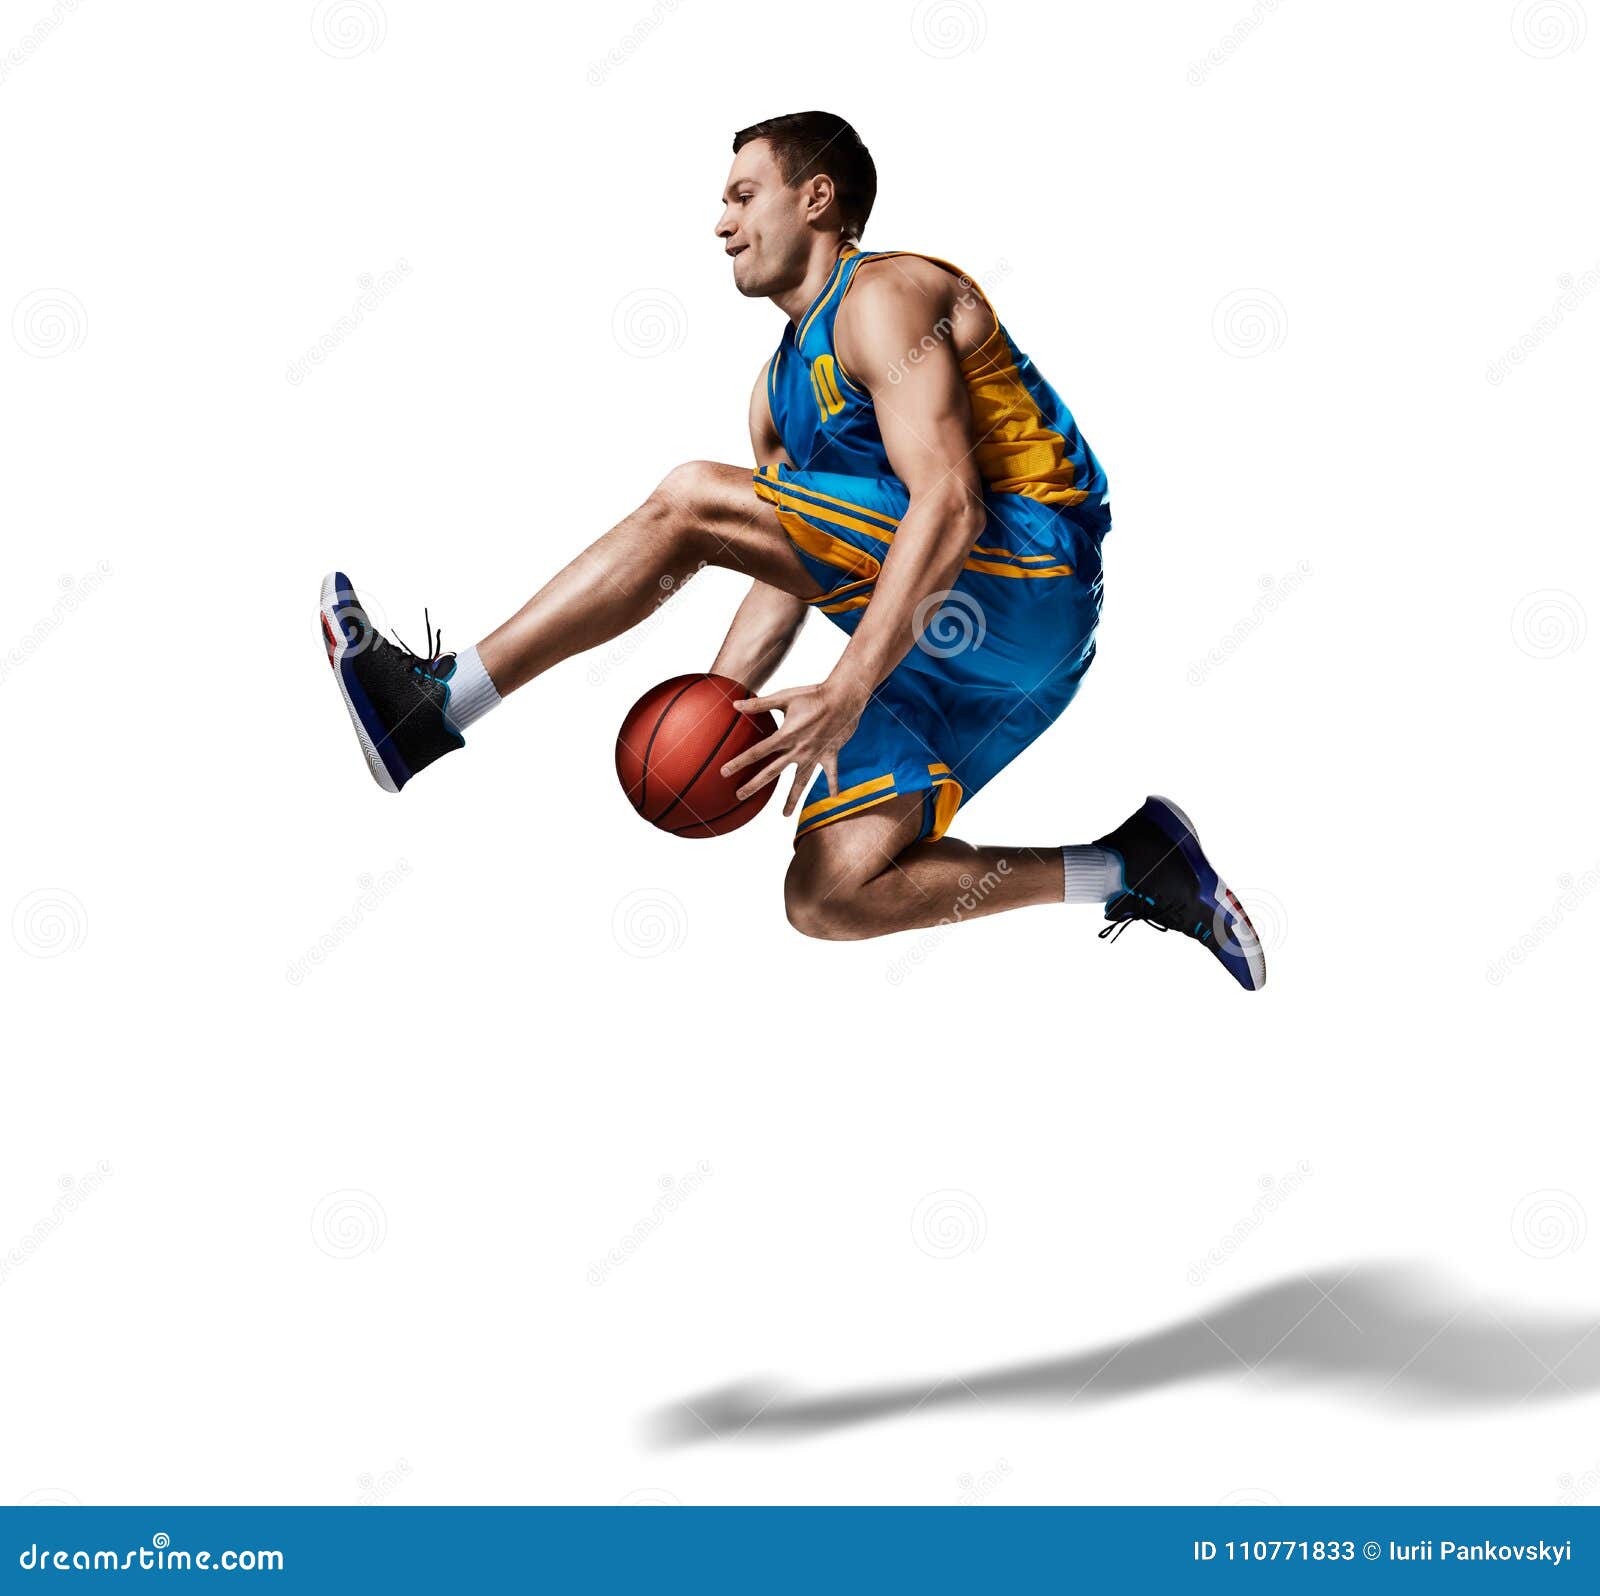 Descubrir 48+ imagen trucos de basquetbol - Abzlocal.mx